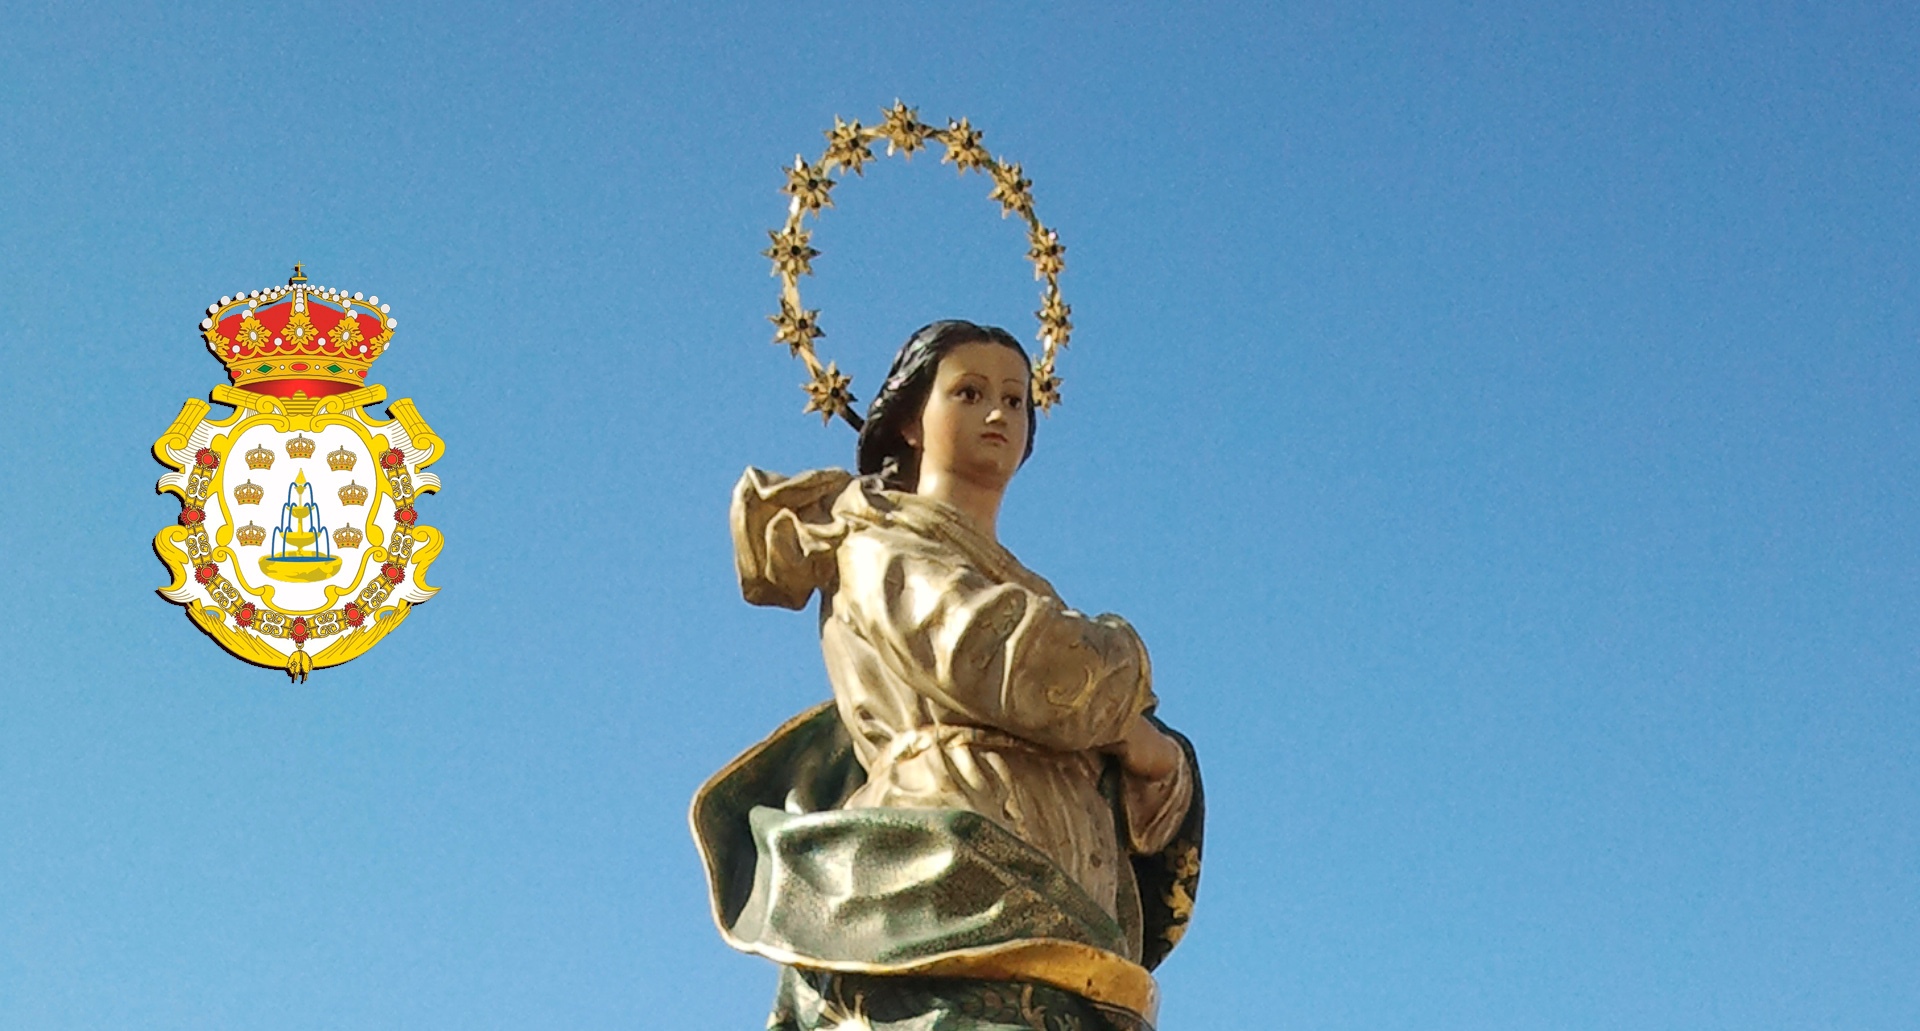 Hoy, 8 de Diciembre, la Iglesia Católica, y en especial el pueblo español, celebra la festividad de la Inmaculada Concepción de María.